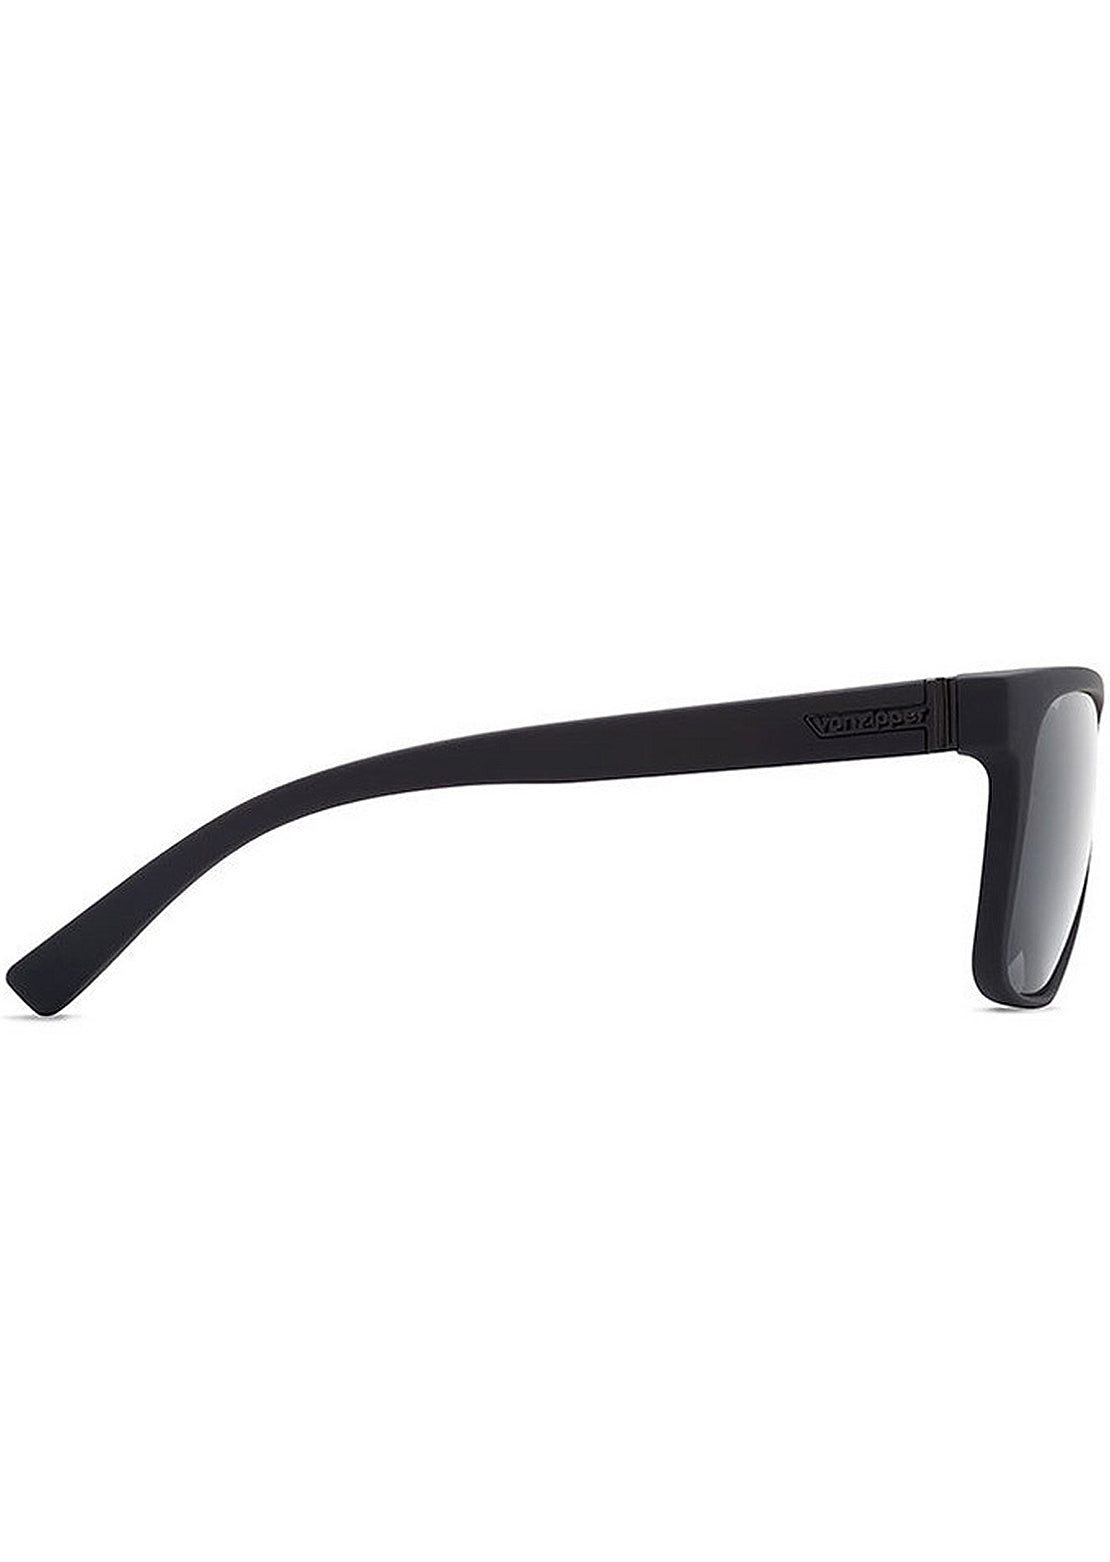 Von Zipper Men&#39;s Lomax Sunglasses Black Satin/Grey